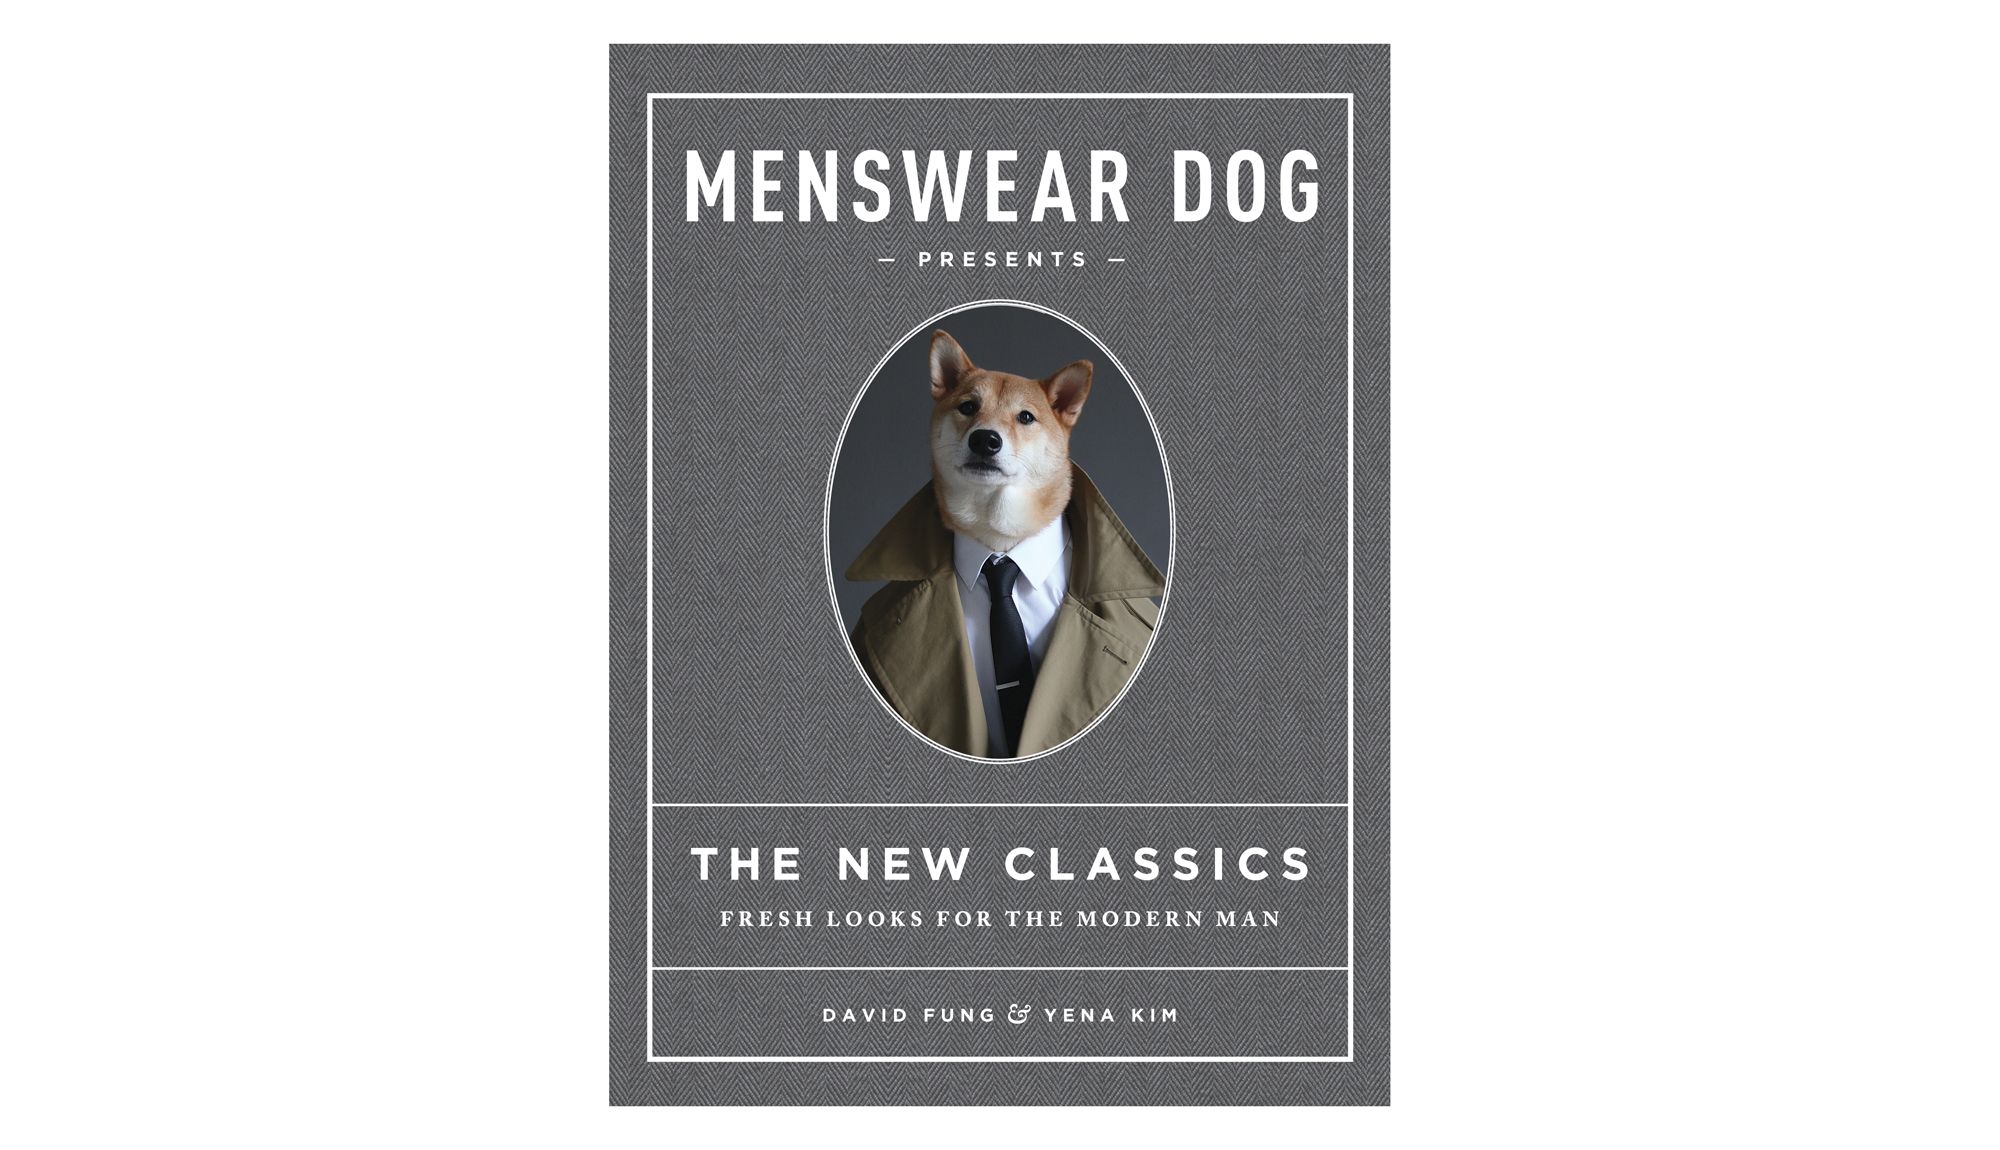 Pas za moška oblačila predstavlja novo klasiko: sveži pogledi na sodobnega človeka, avtorja David Fung in Yena Kim